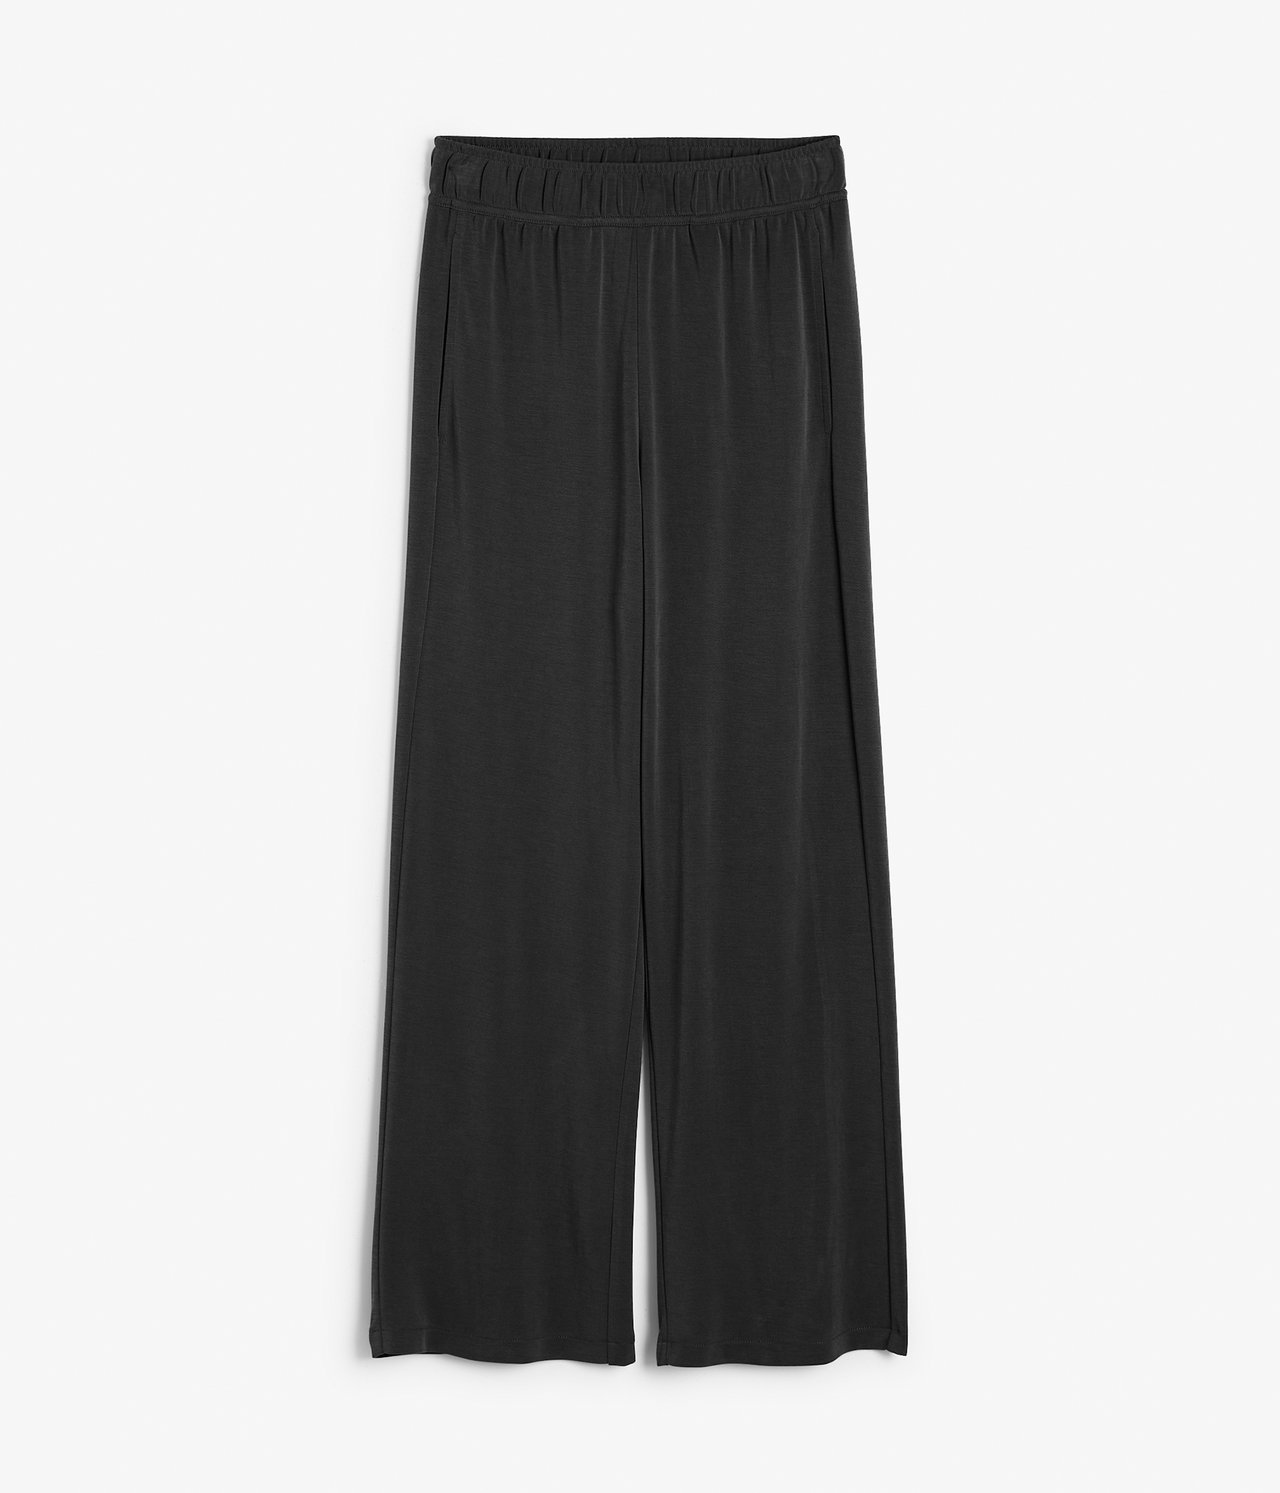 Spodnie trykotowe Loungewear - Czarne - 6